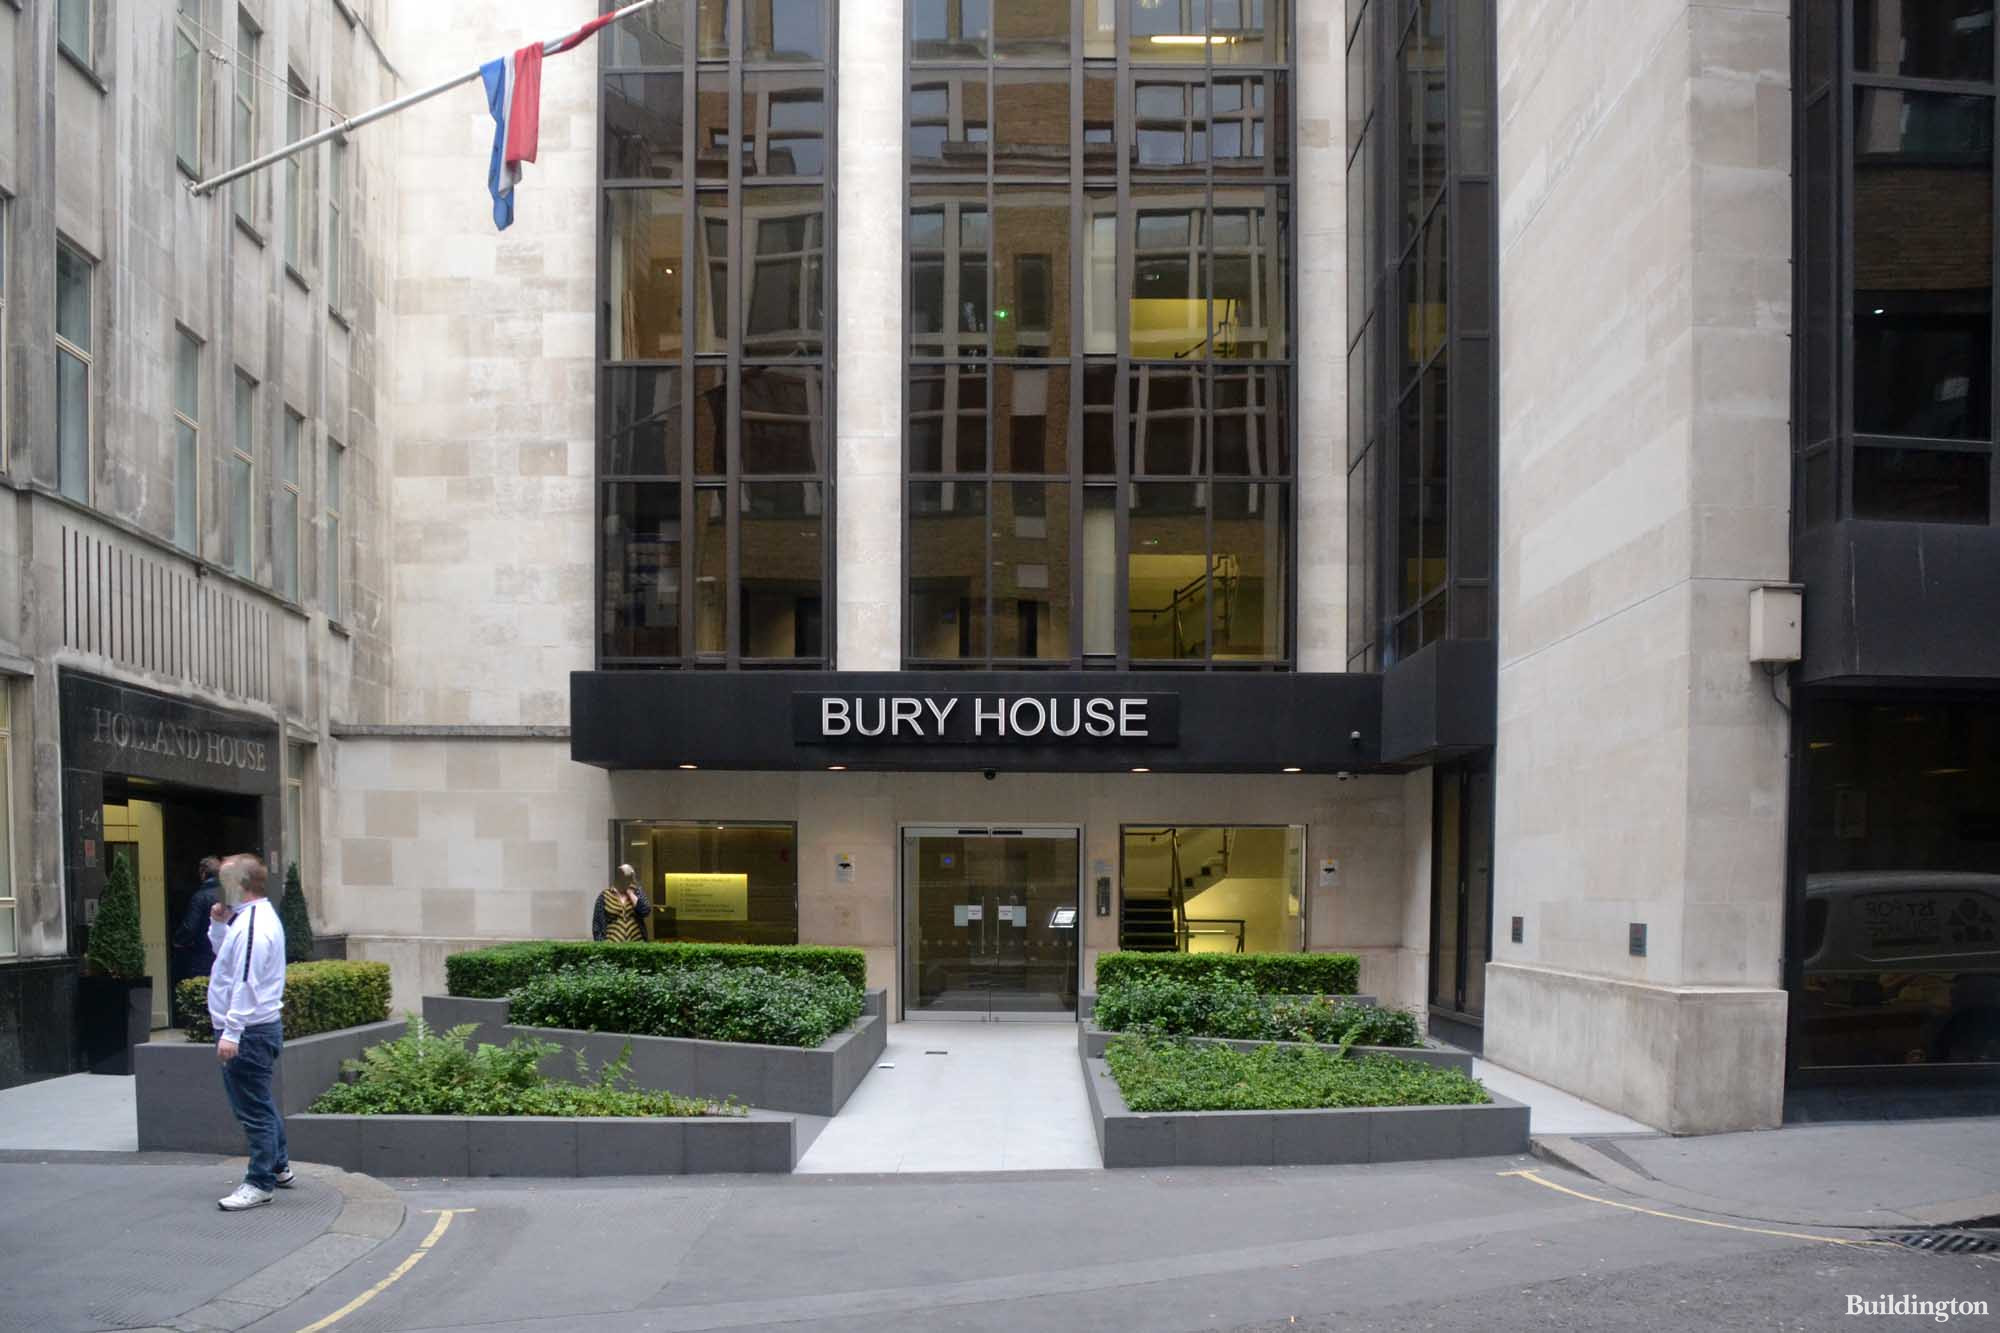 Bury House at 31 Bury Street in tthe City of London EC3.